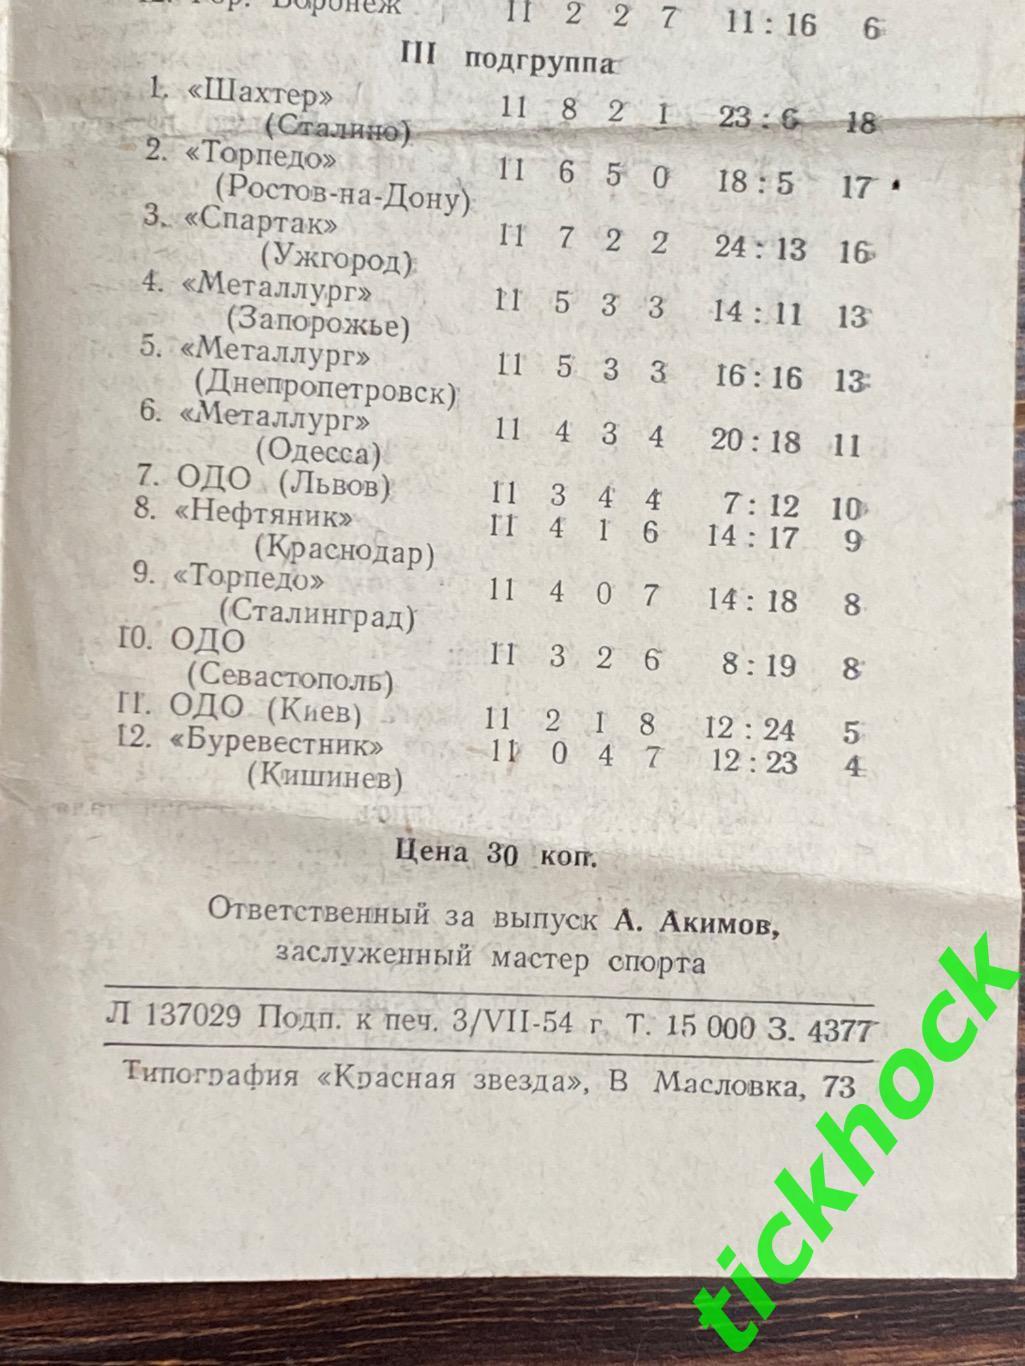 ЦДСА ( ЦСКА ) Москва - Динамо Москва 06.07.1954.-- SY 1